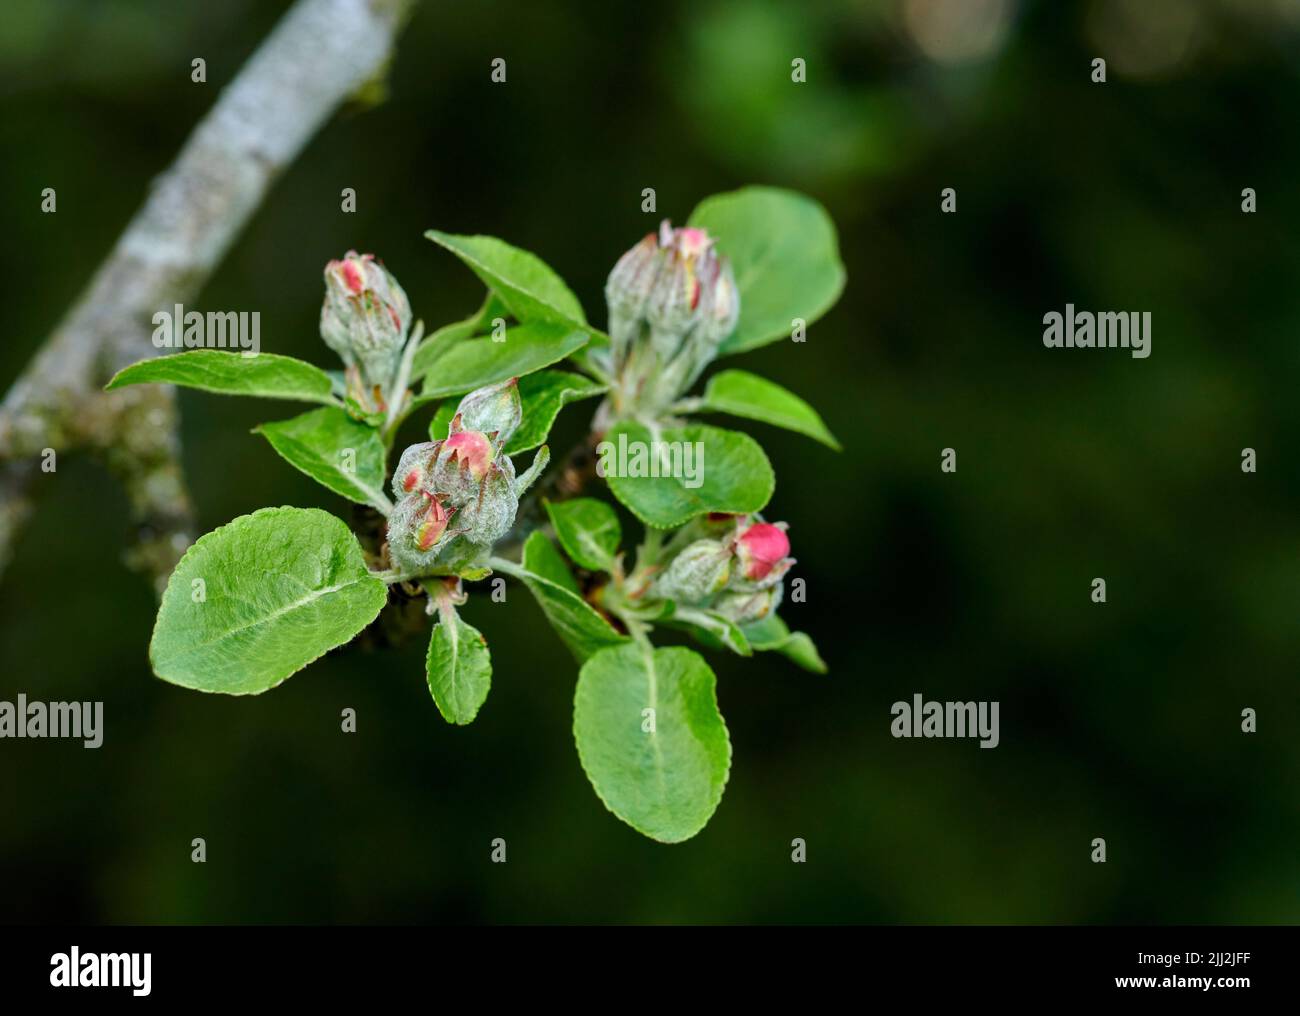 Primo piano di un fiore di mela che cresce su un albero in un giardino cortile in estate. Frutta coltivata su rami di un albero in un ambiente naturale in primavera Foto Stock